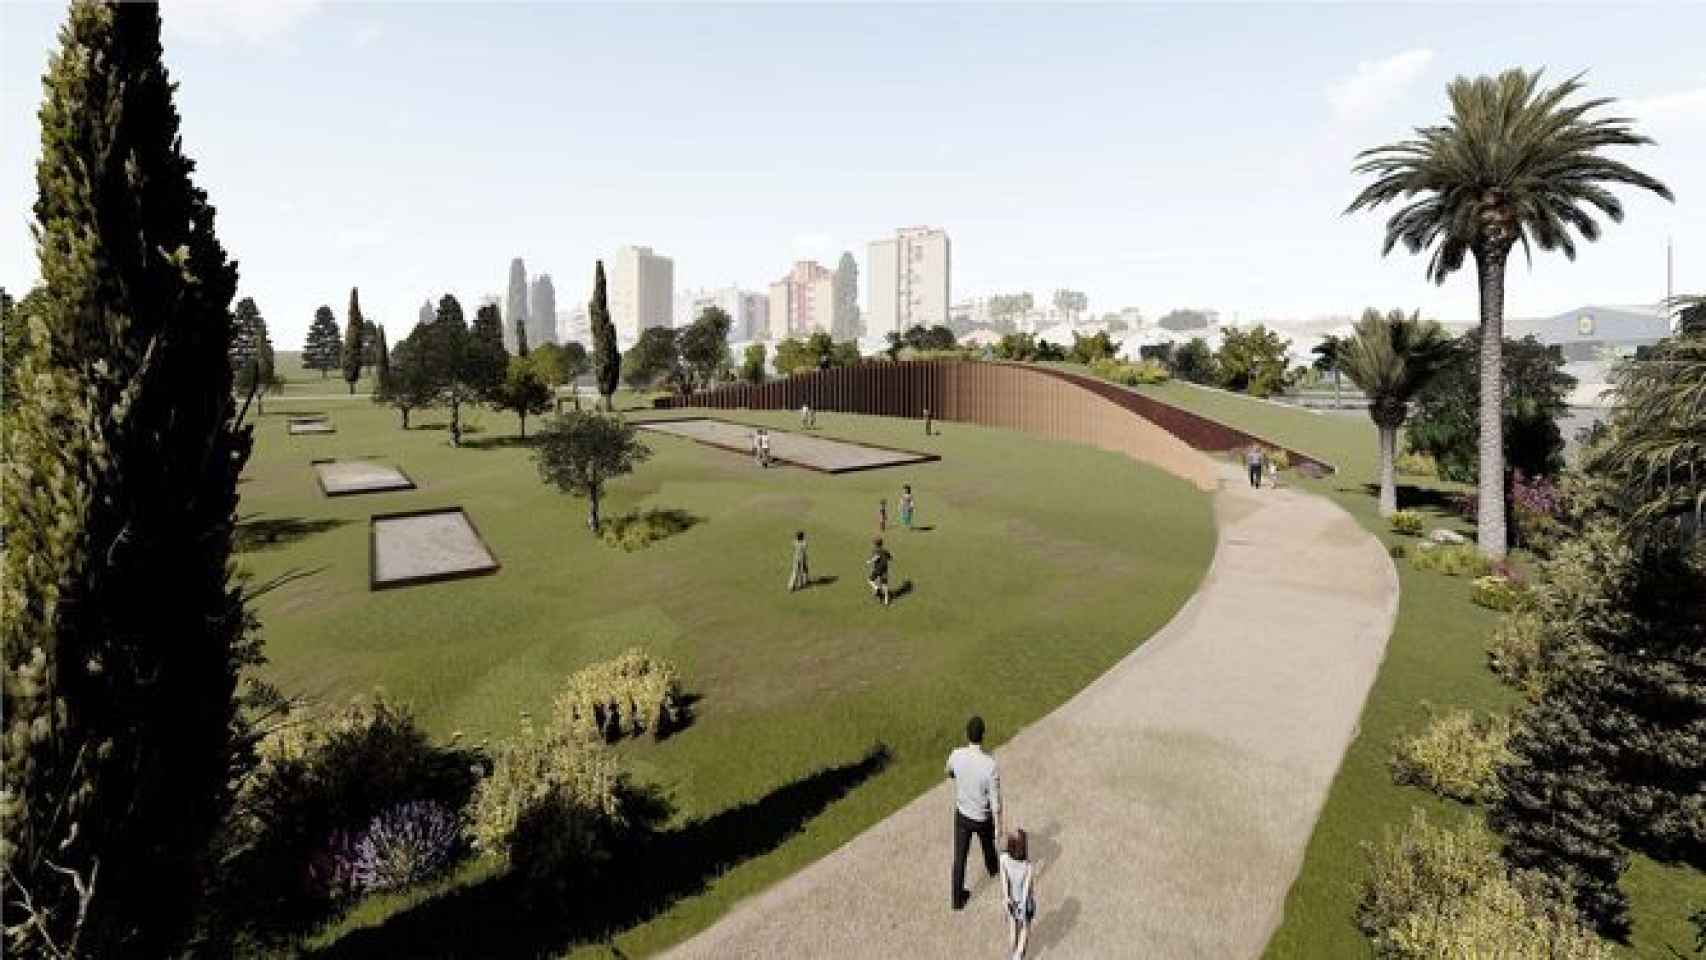 Diseño del equipamiento previsto en el parque de San Rafael, en Málaga.